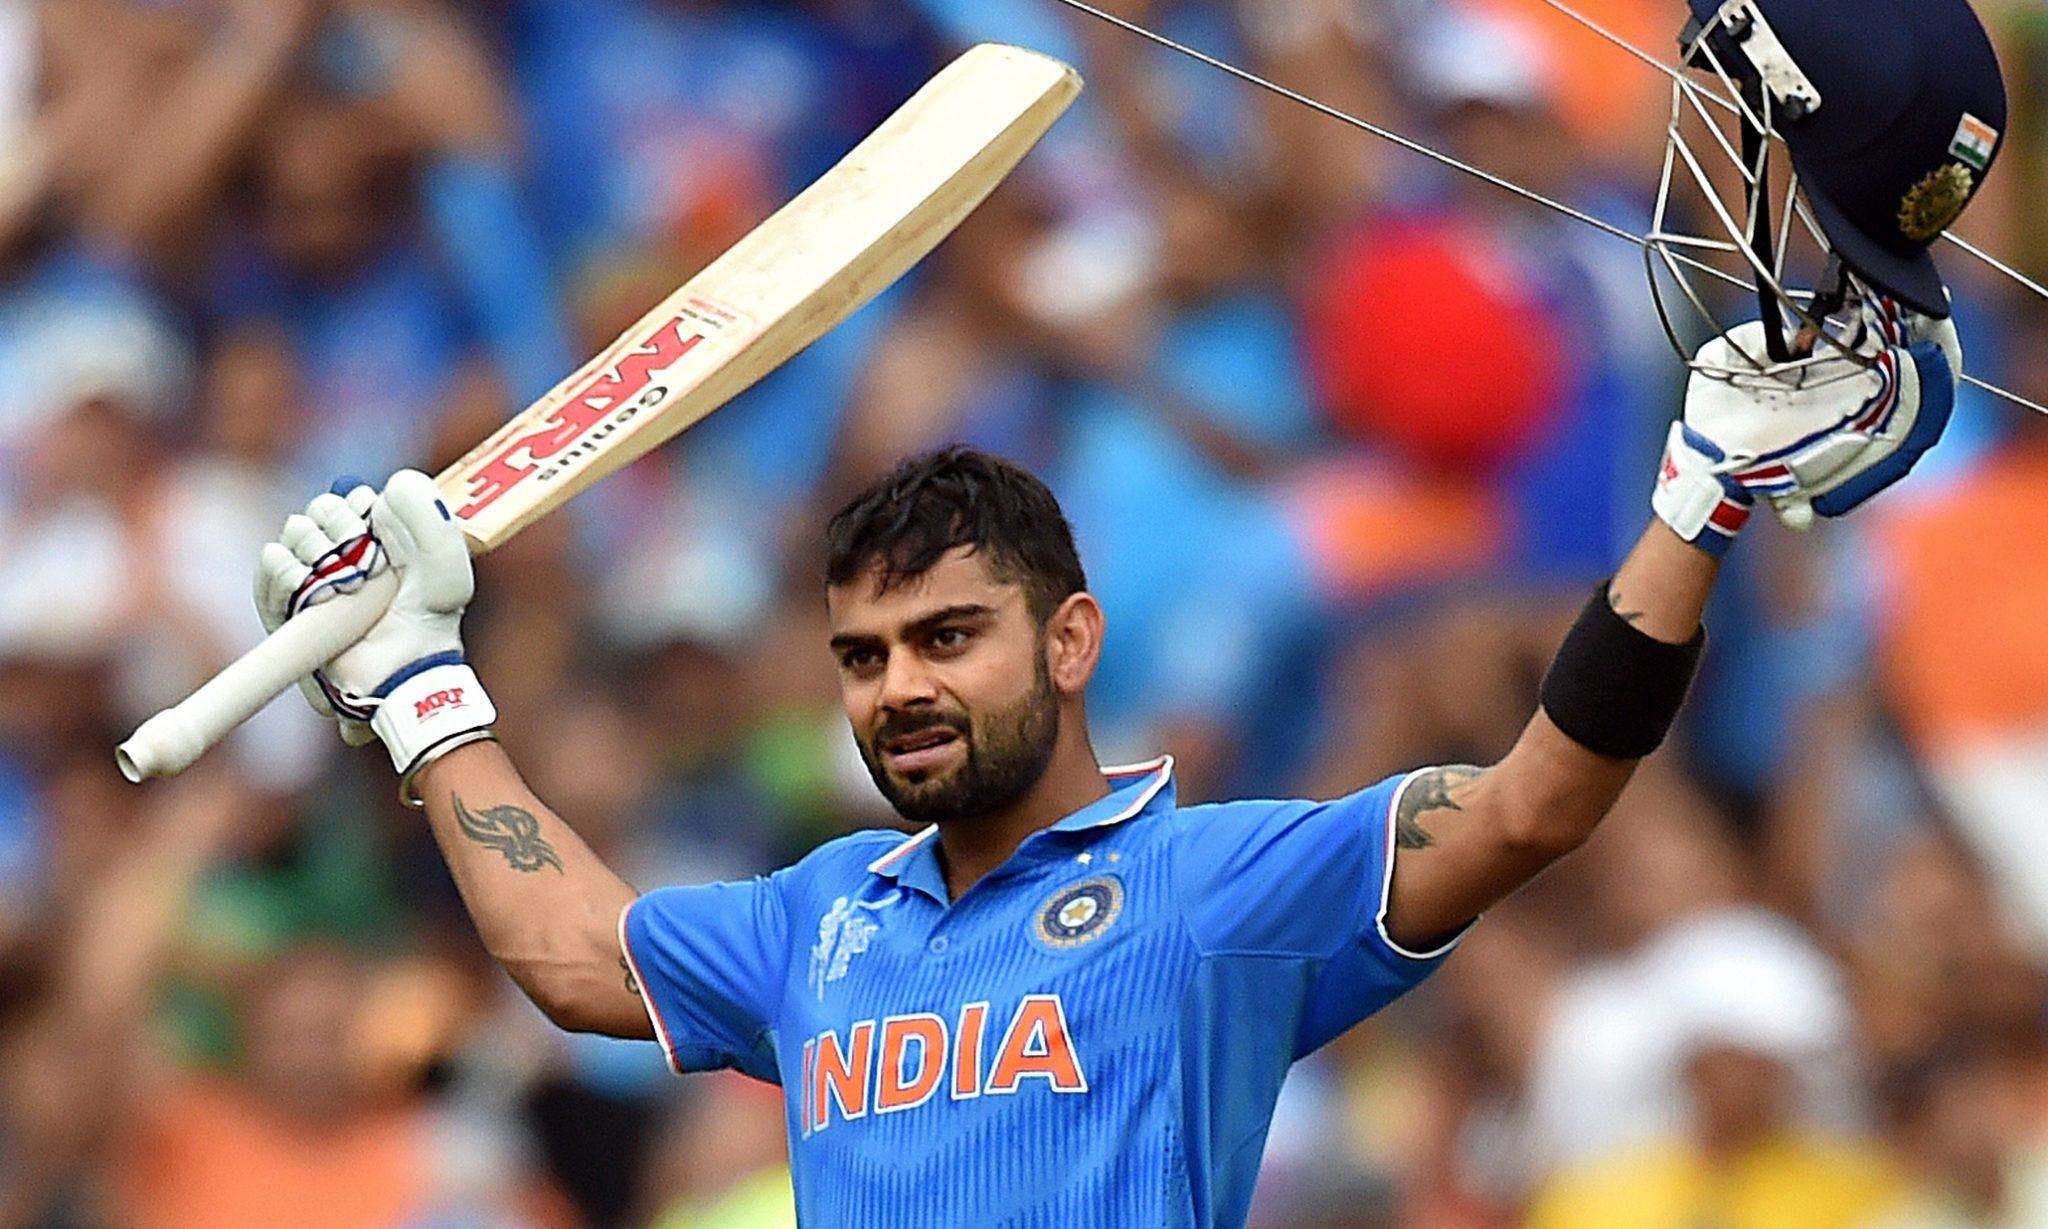 IND VS ENG: पहले वनडे मैच से पहले जानिए पिच को लेकर स्पेशल रिपोर्ट